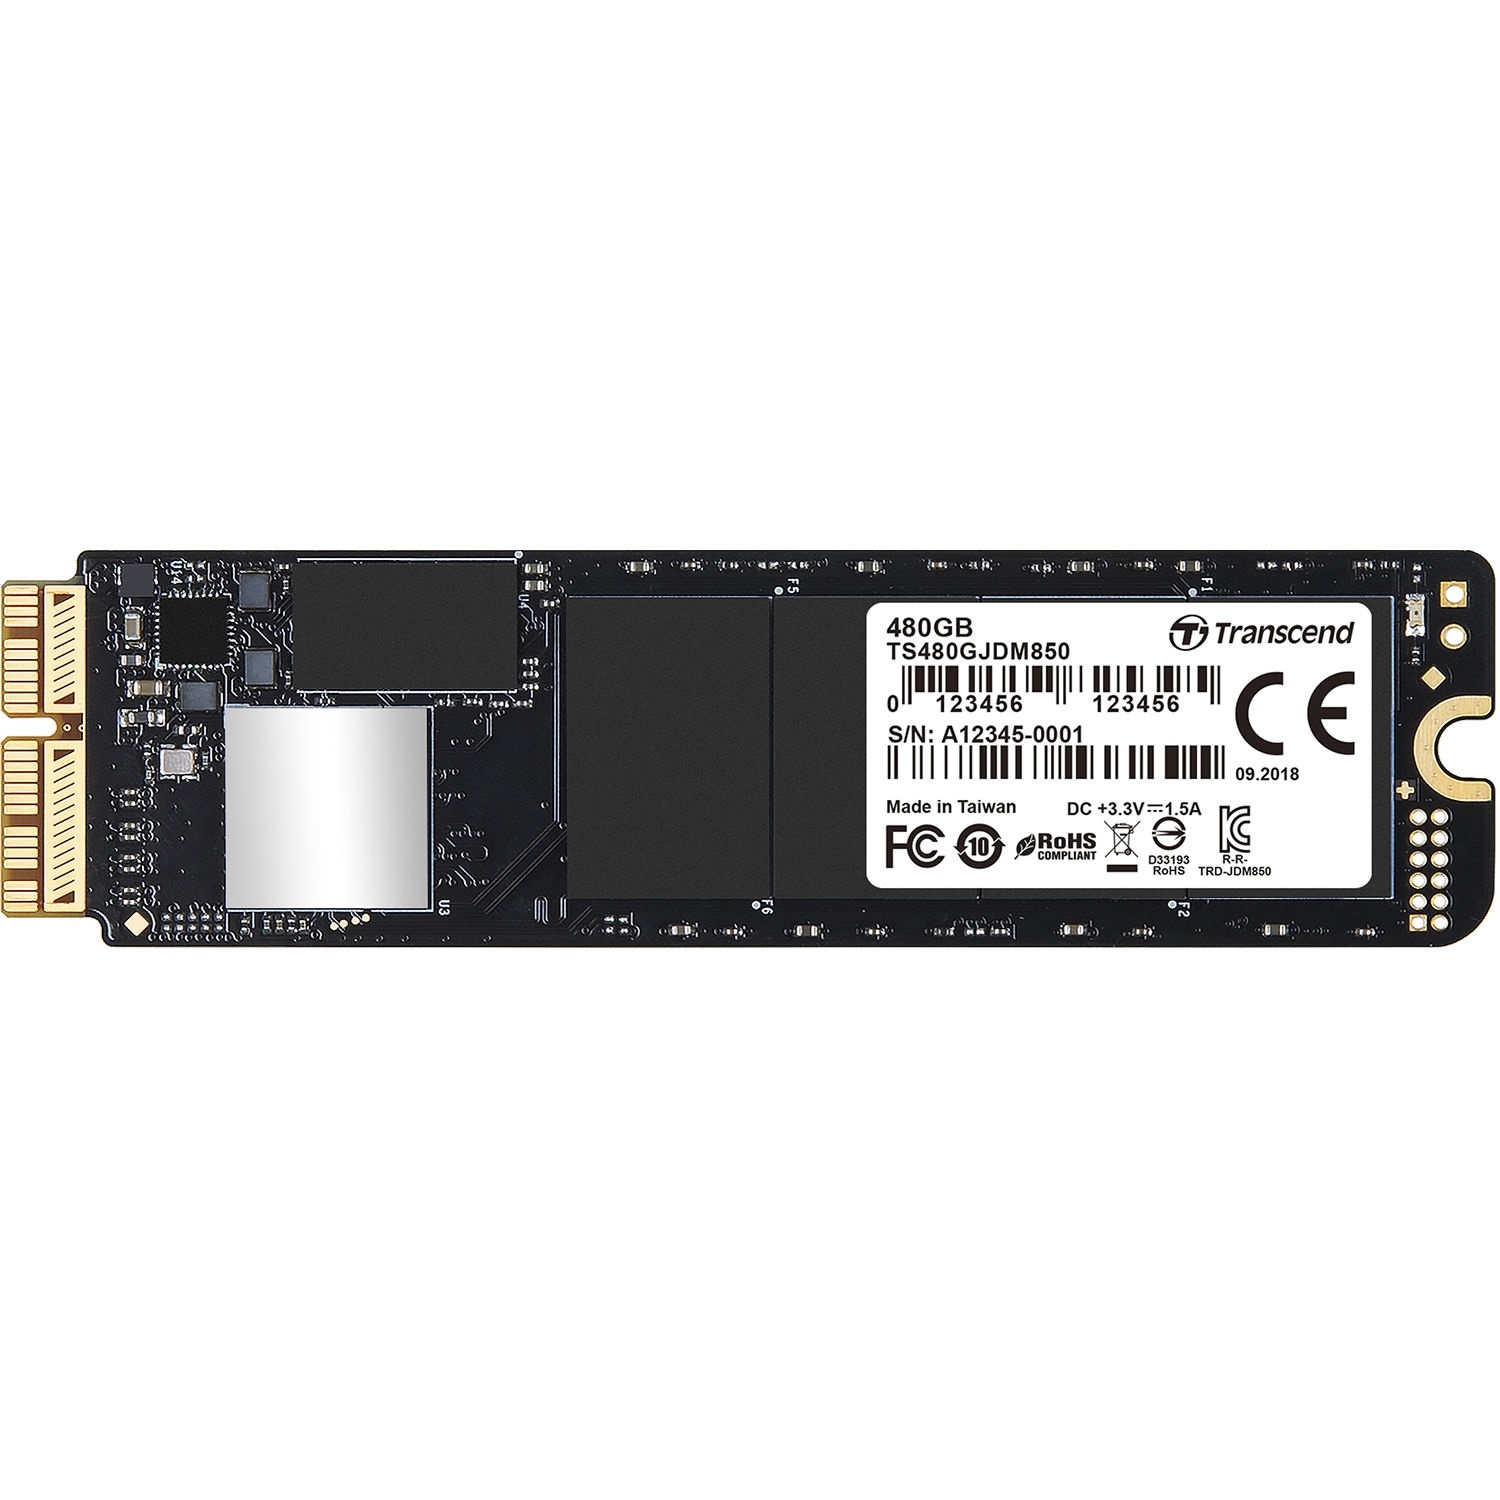 Transcend 480GB JetDrive 850 PCIe Gen3 x4 SSD